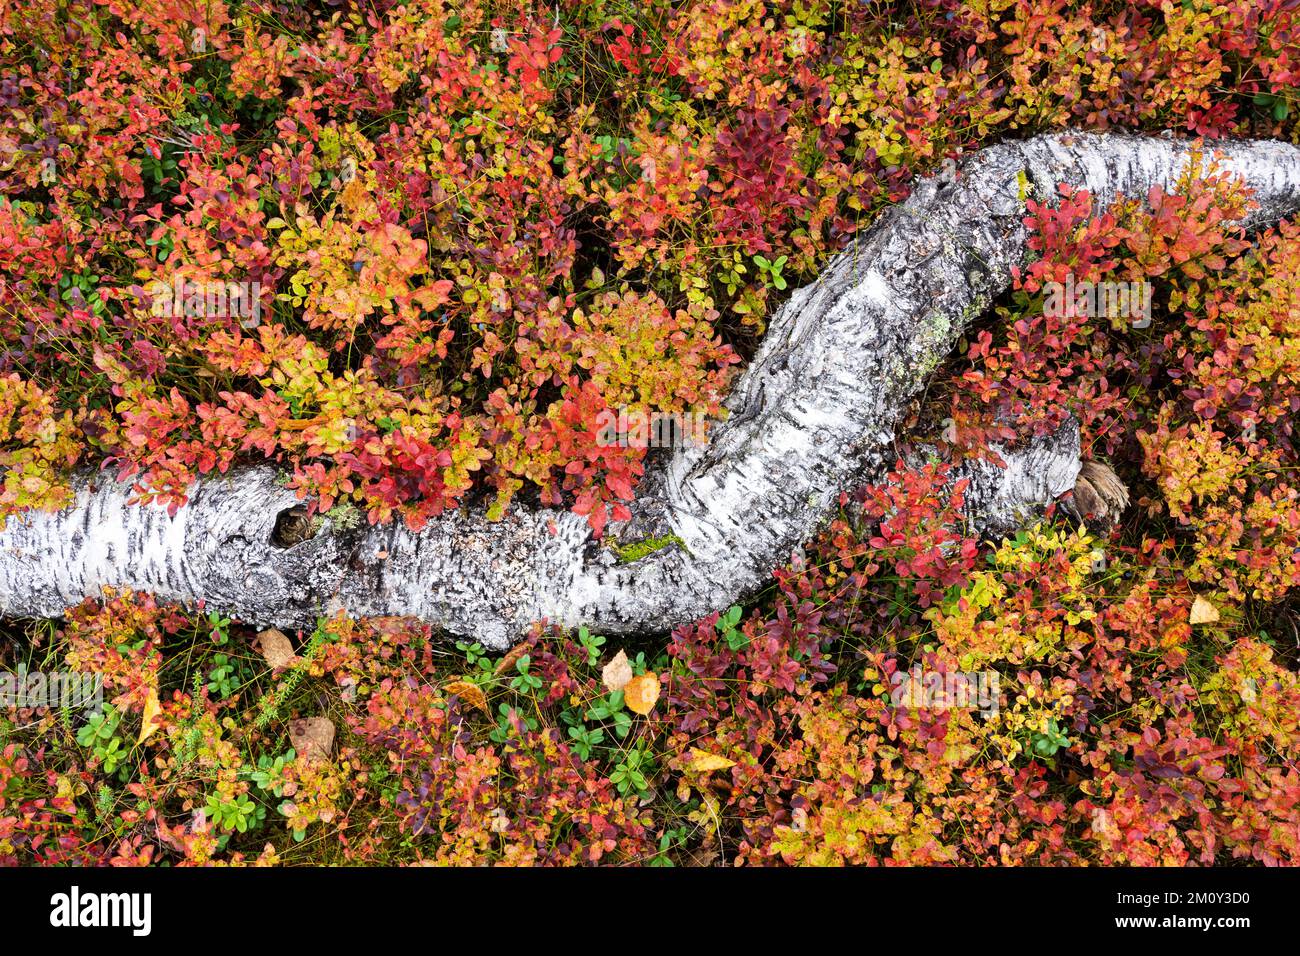 Un bois de bouleau mort au milieu d'arbustes colorés pendant le feuillage d'automne dans le parc national de Riisitunturi, dans le nord de la Finlande Banque D'Images